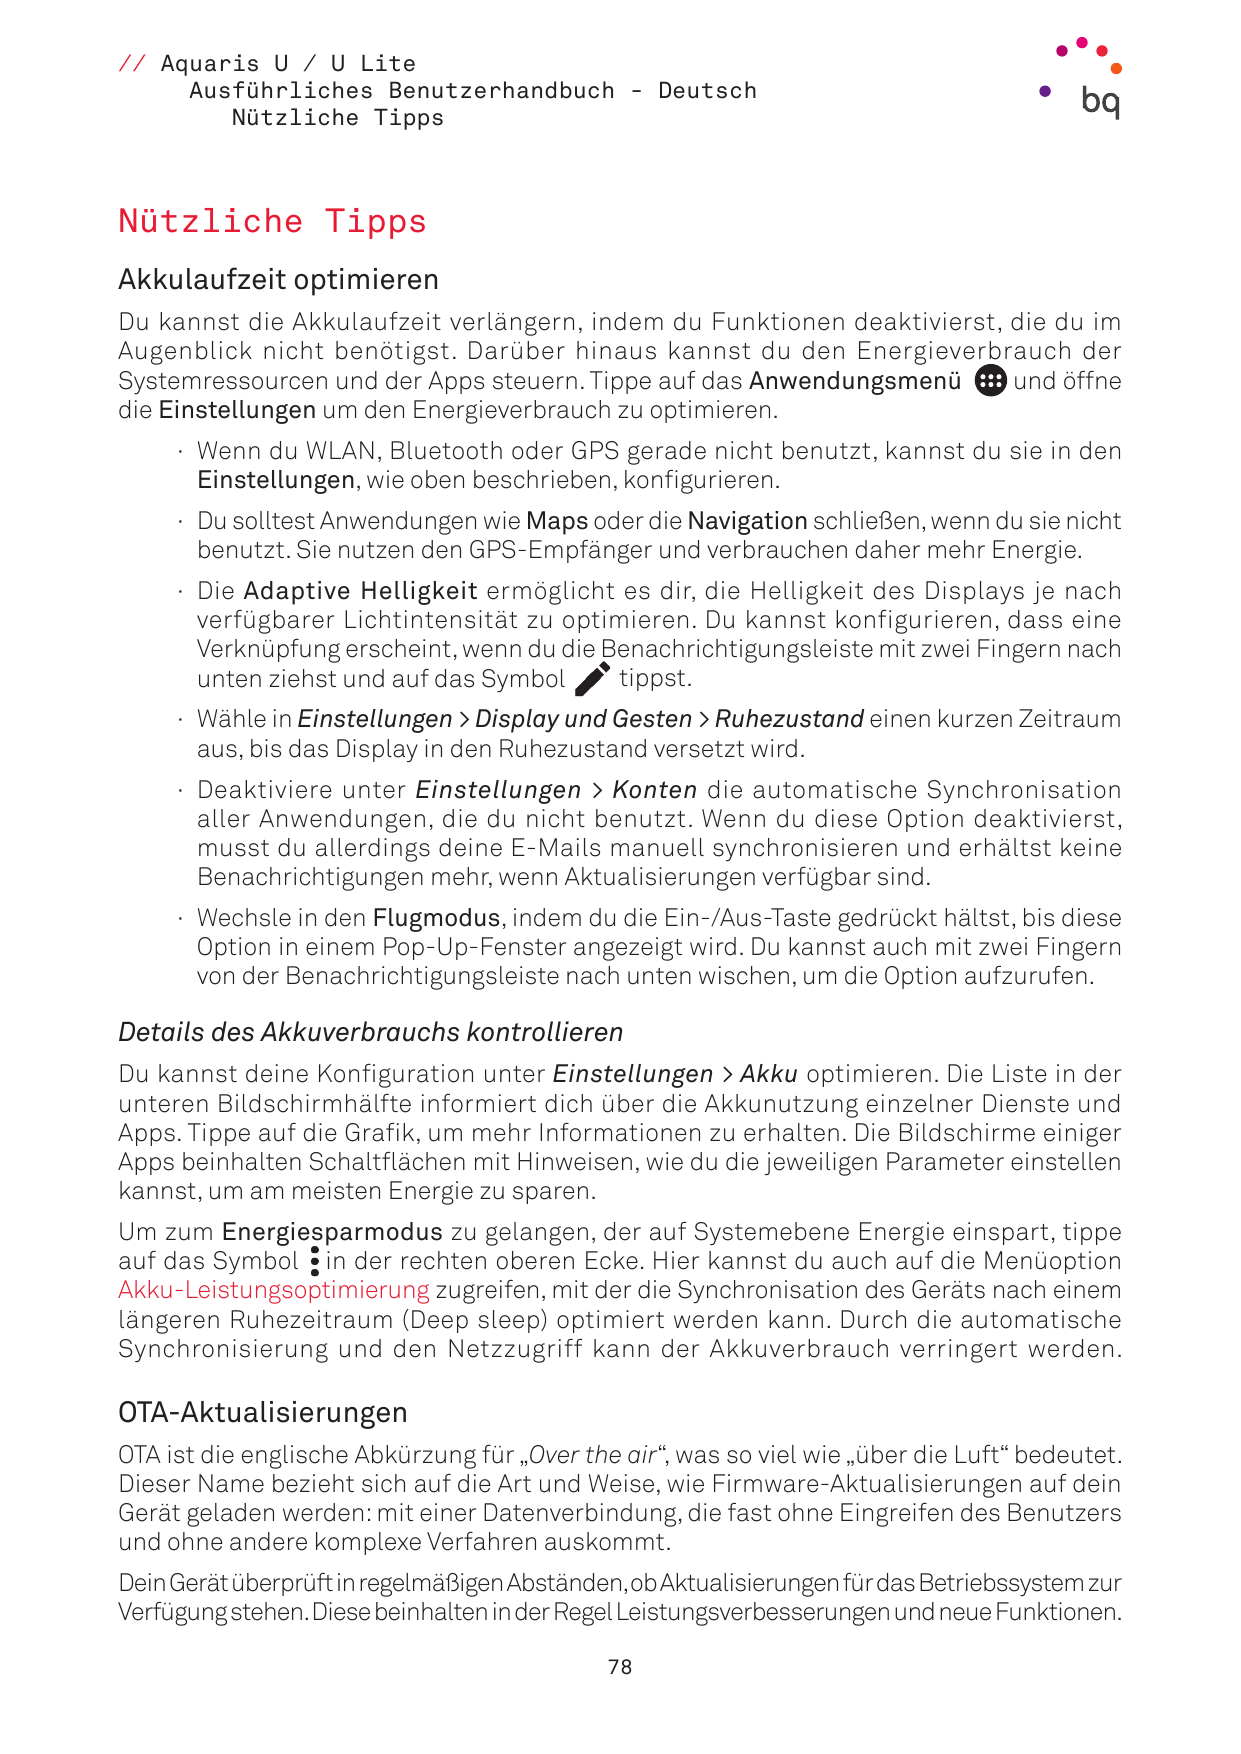 // Aquaris U / U LiteAusführliches Benutzerhandbuch - DeutschNützliche TippsNützliche TippsAkkulaufzeit optimierenDu kannst die 